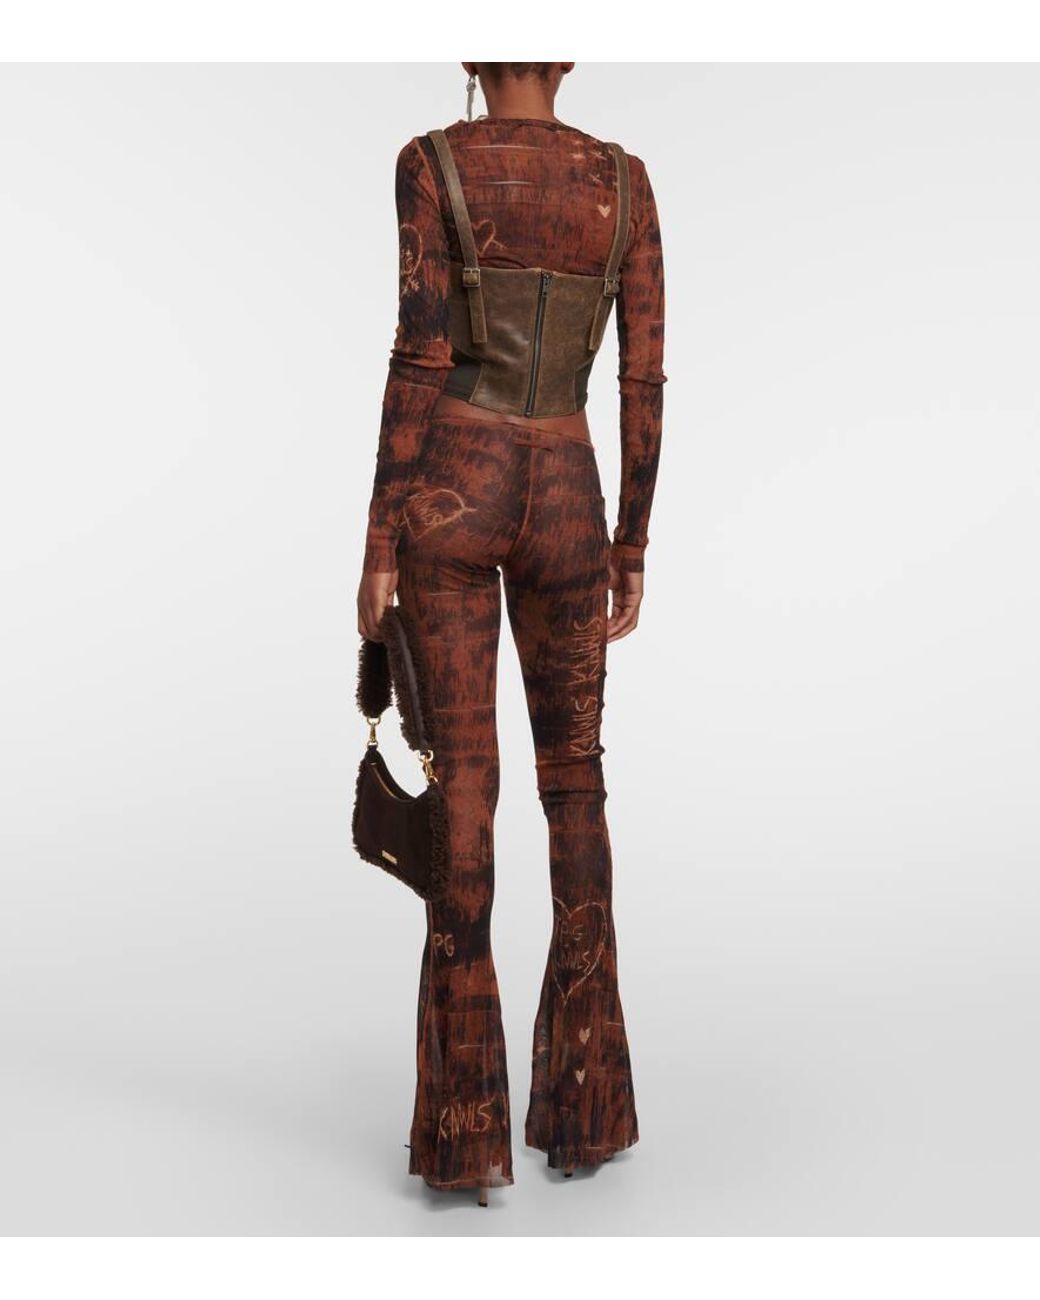 x KNWLS cutout leather bustier in brown - Jean Paul Gaultier